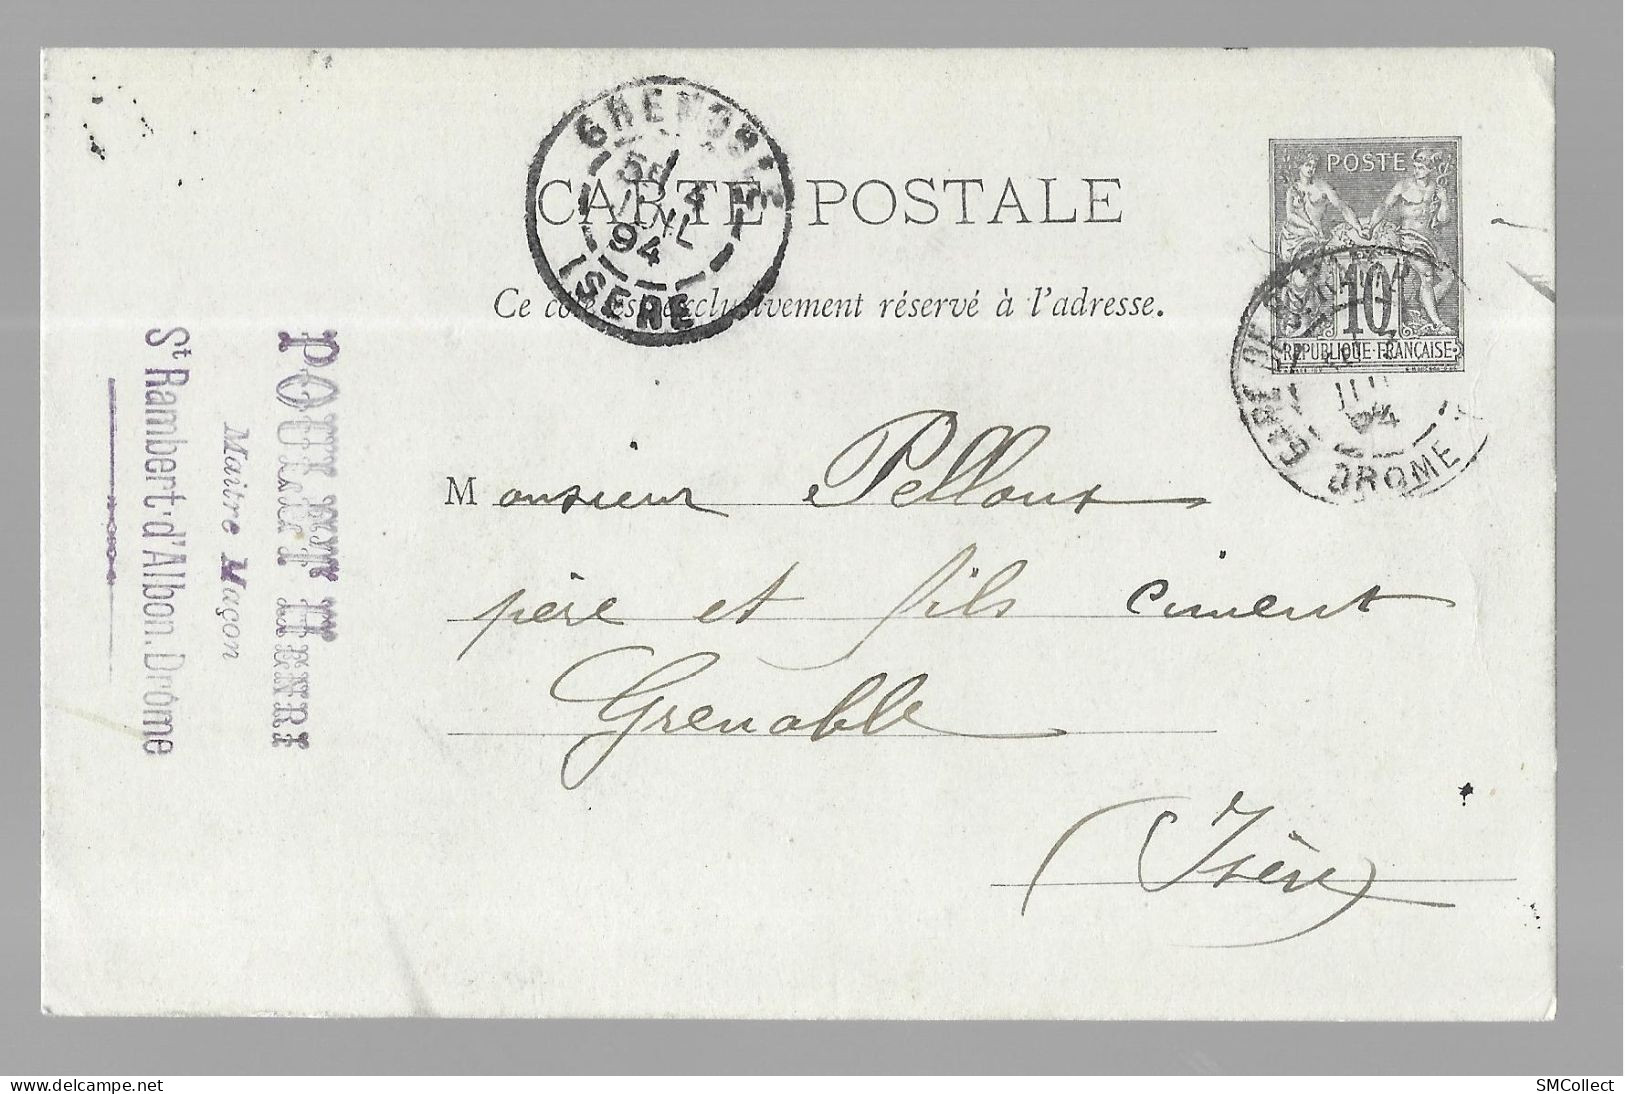 Entier Postal, Sage 10 Centimes Noir Voyagé En Juillet 1894, De Saint Rambert D'Albon Gare Vers Grenoble (13573) - Cartes Postales Types Et TSC (avant 1995)